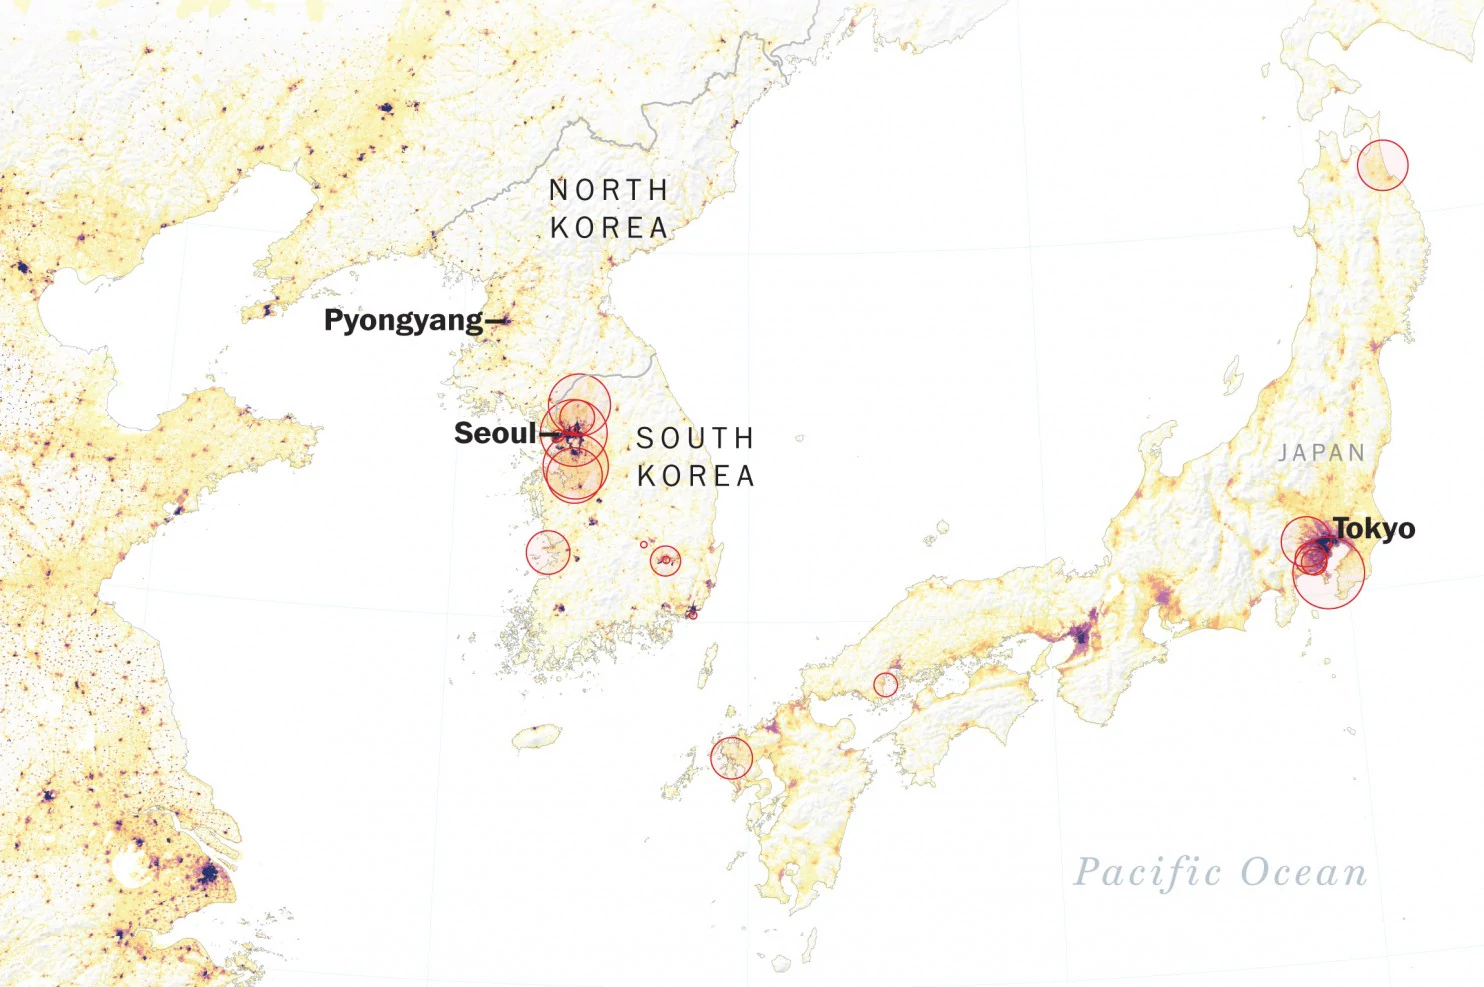 North Korea fires massive missile,  Japan on high alert